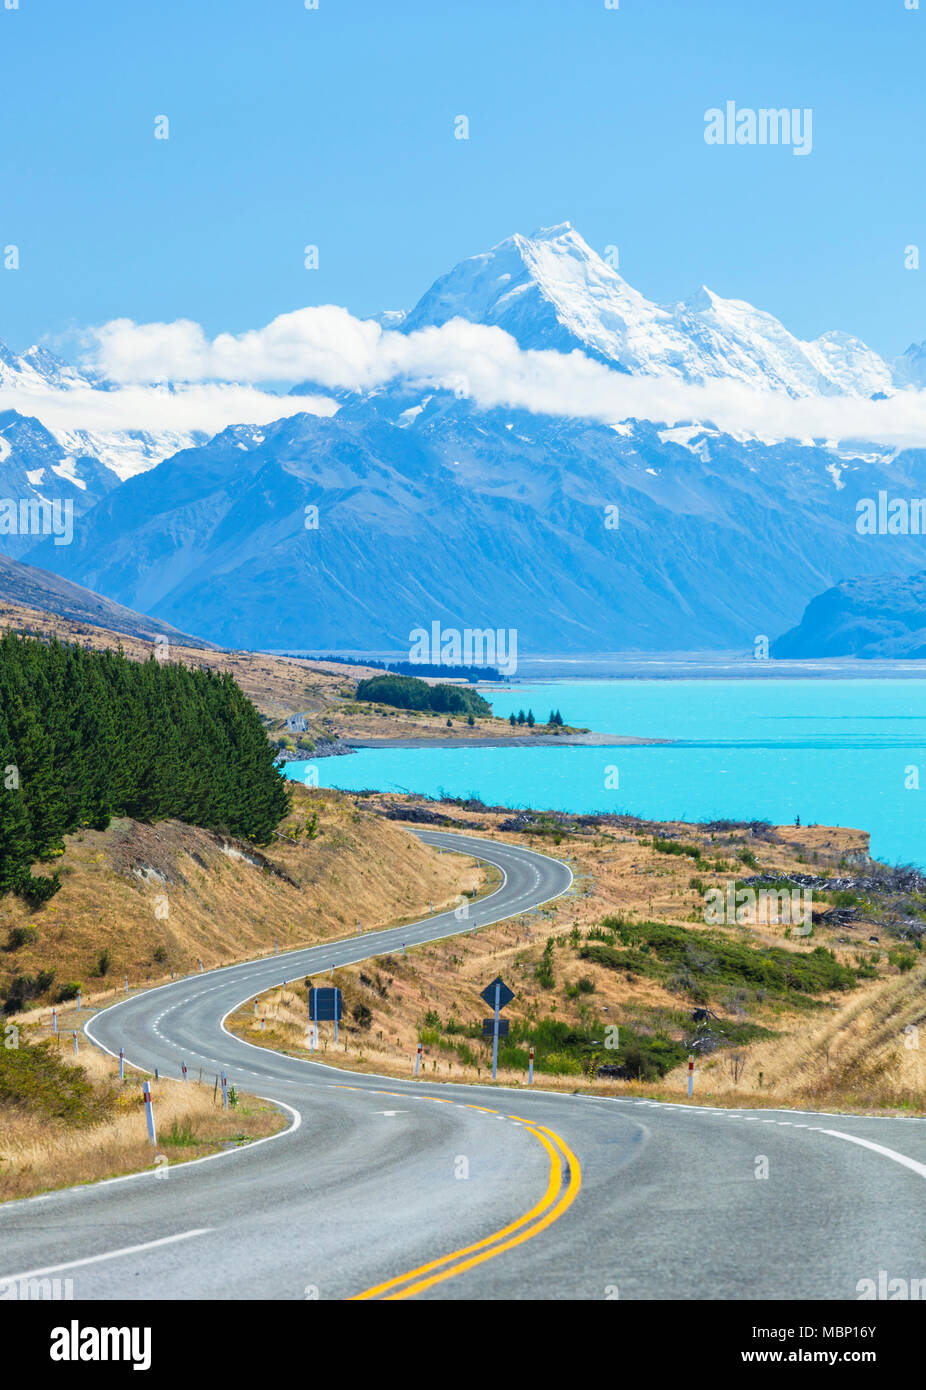 Nuova Zelanda Isola del Sud della Nuova Zelanda tortuosa strada attraverso il parco nazionale di Mount Cook accanto al lago glaciale Pukaki nuova zelanda mackenzie distretto nz Foto Stock